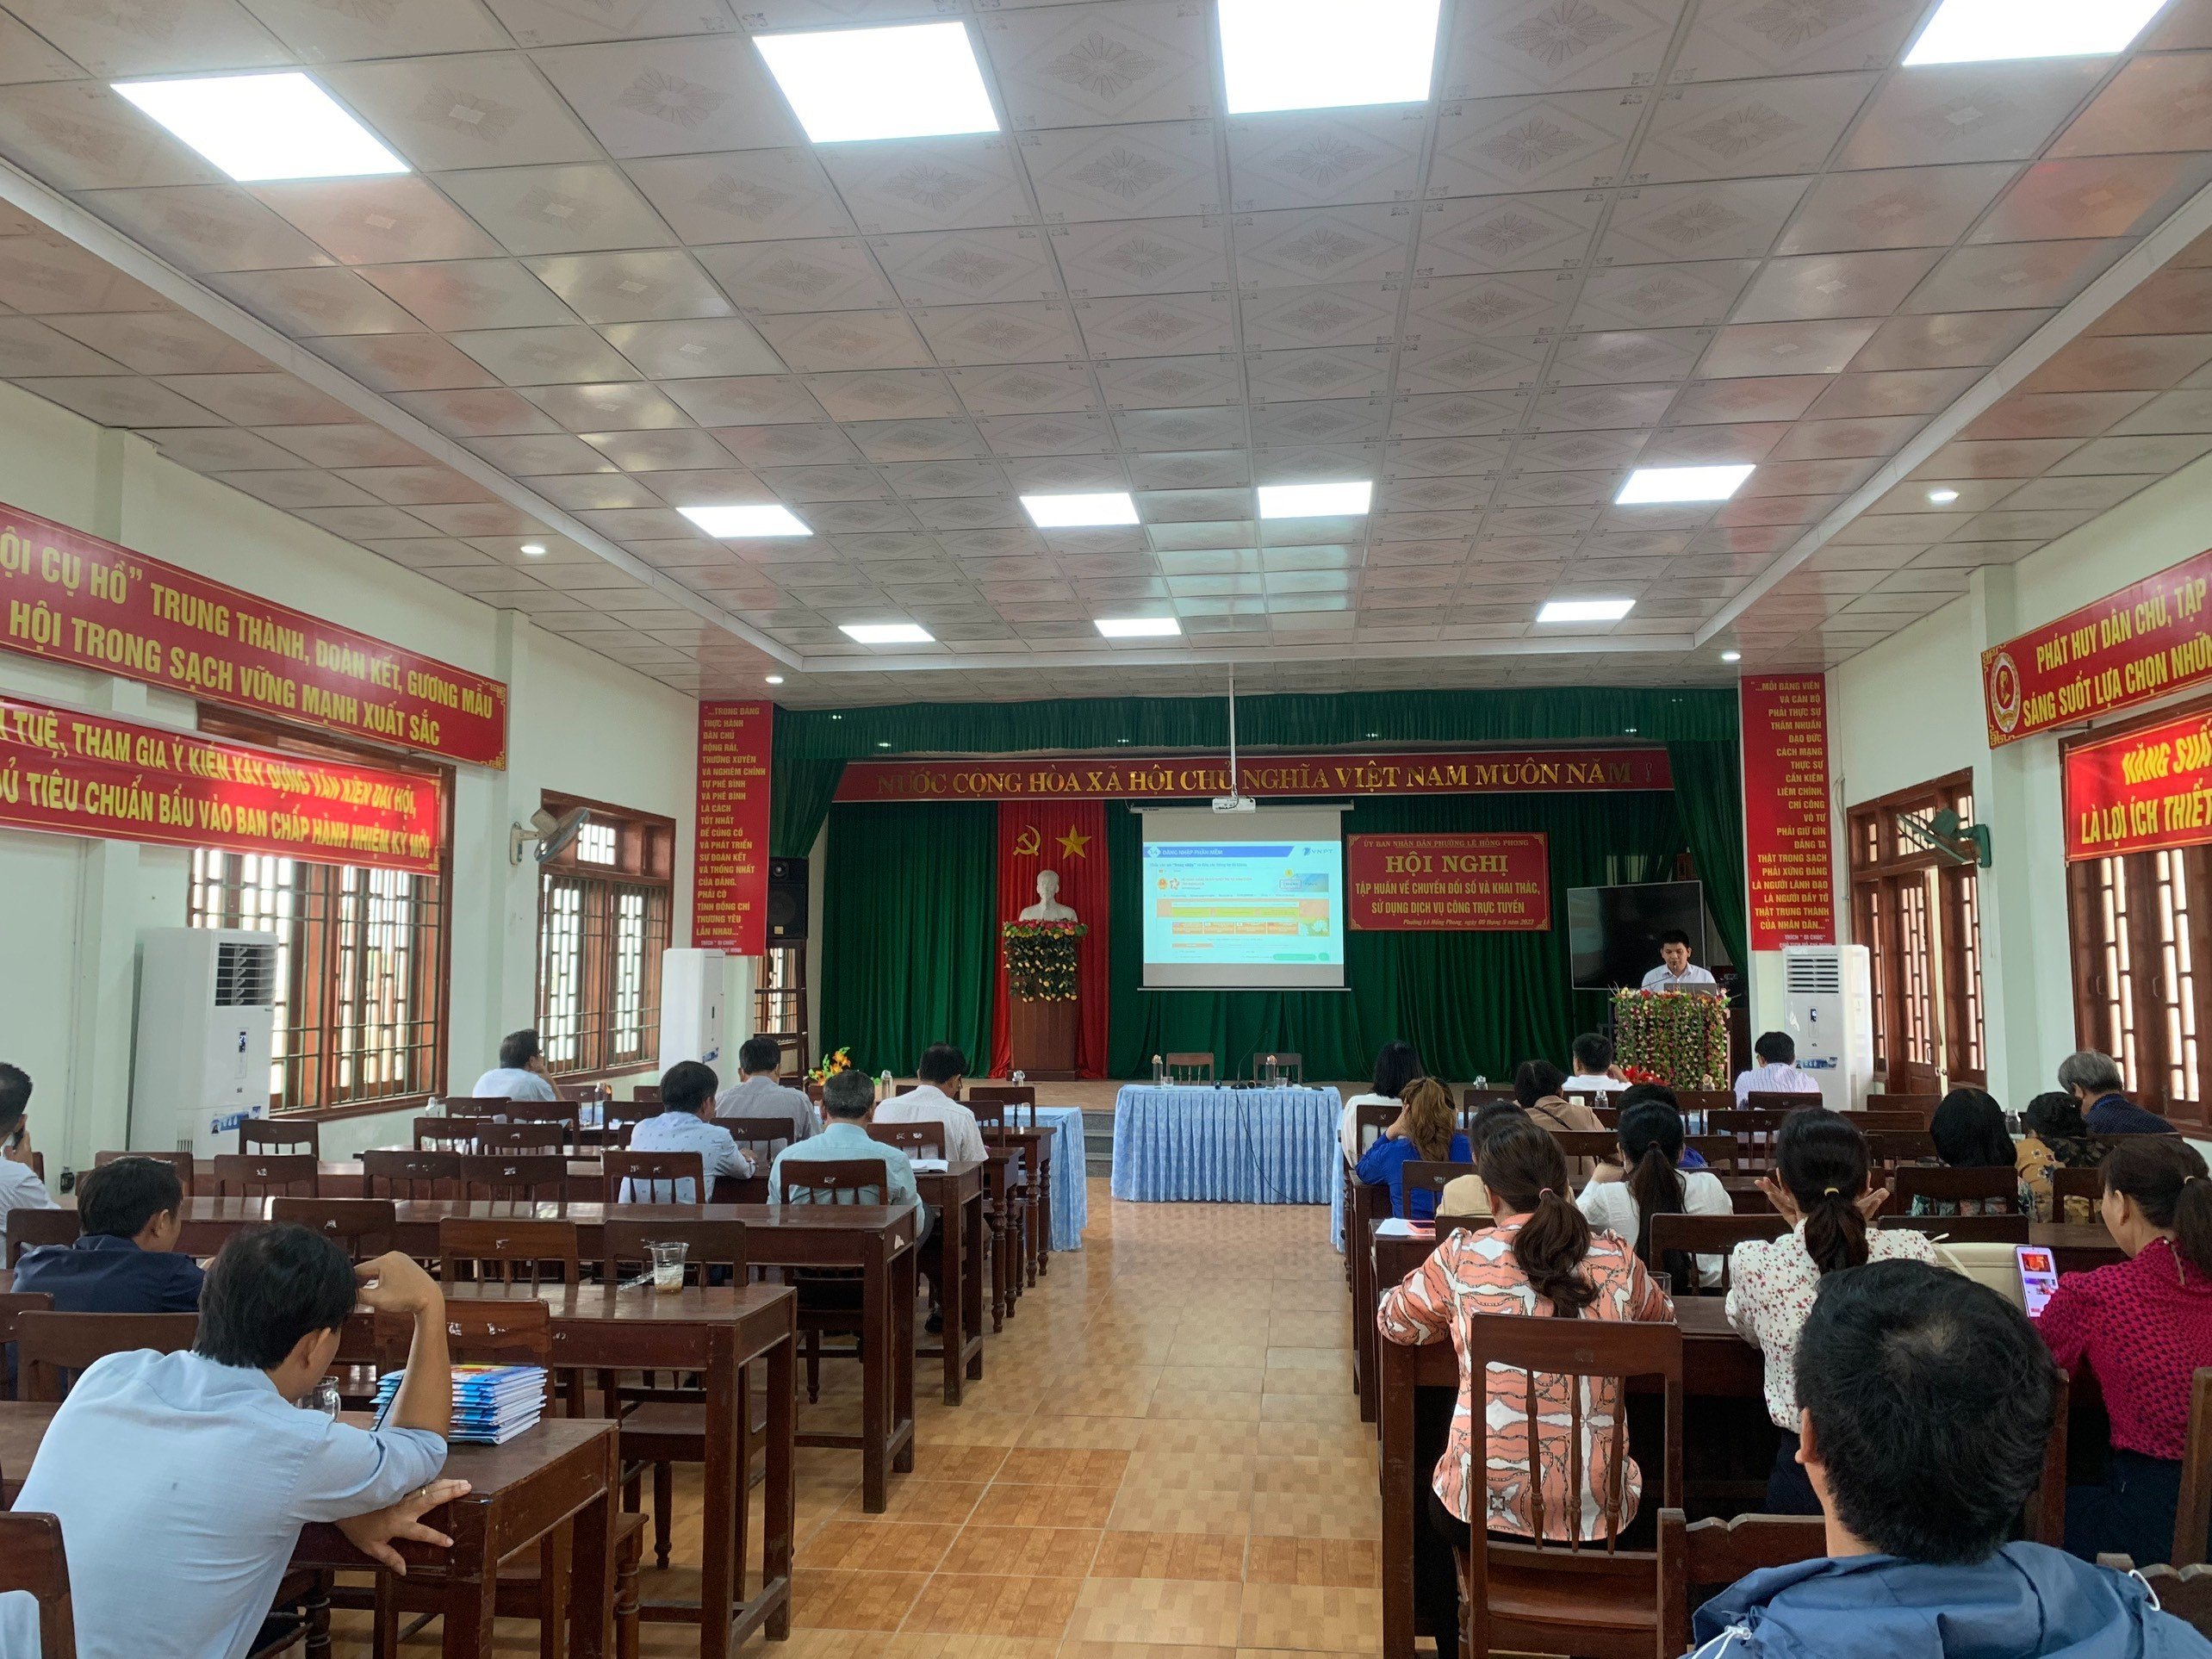 Hơn 100 thành viên Tổ công nghệ số cộng đồng của phường Lê Hồng Phong được tập huấn về chuyển đổi số